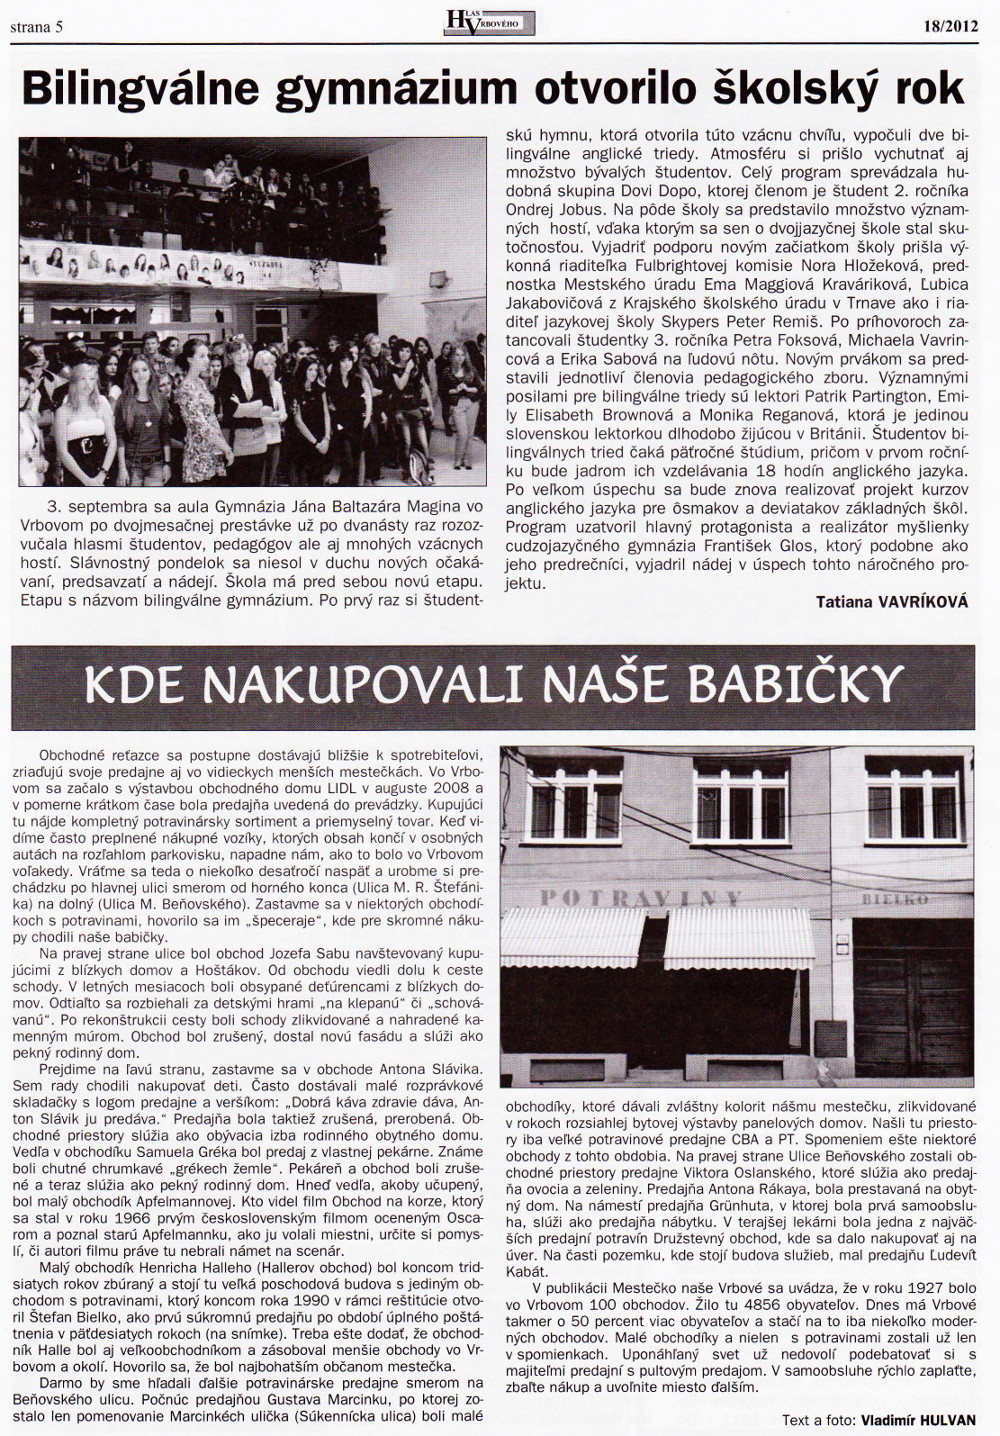 Hlas Vrbového 18/2012, strana 5